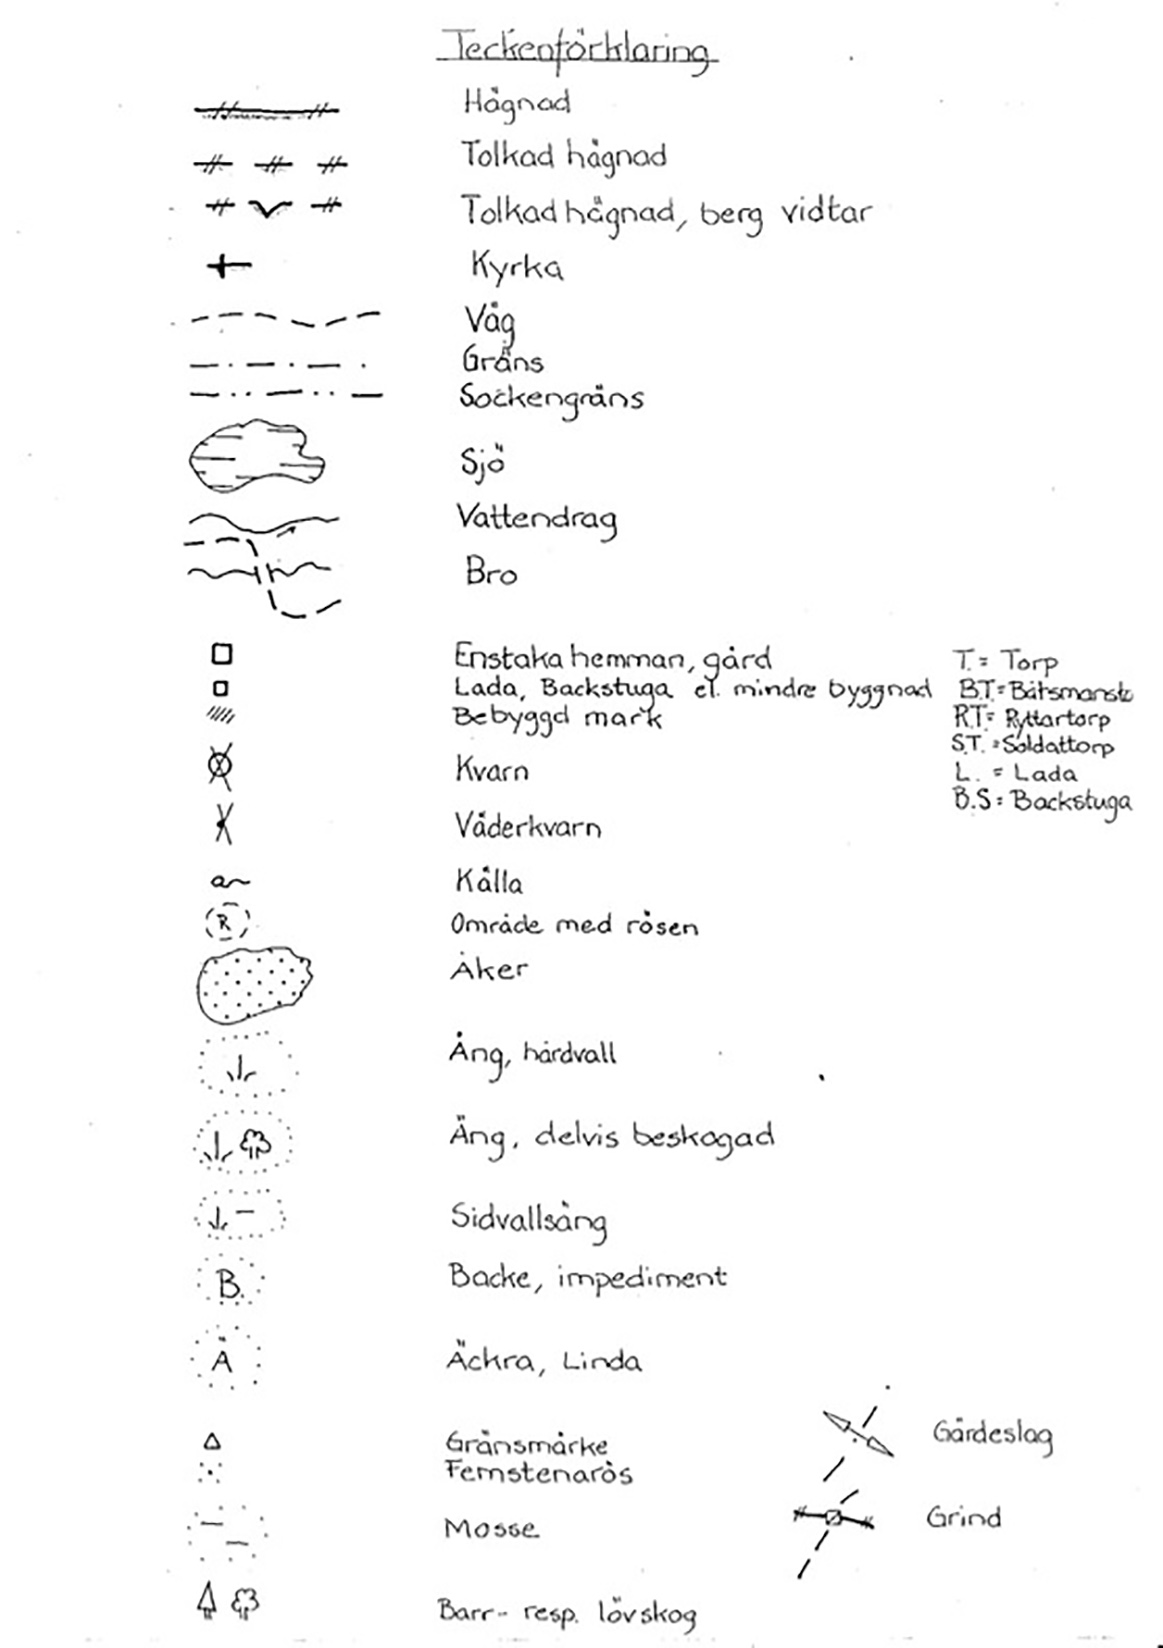 En handskriven lista med symboler och beskrivningar av dessa som handlar om kartöverlägg.